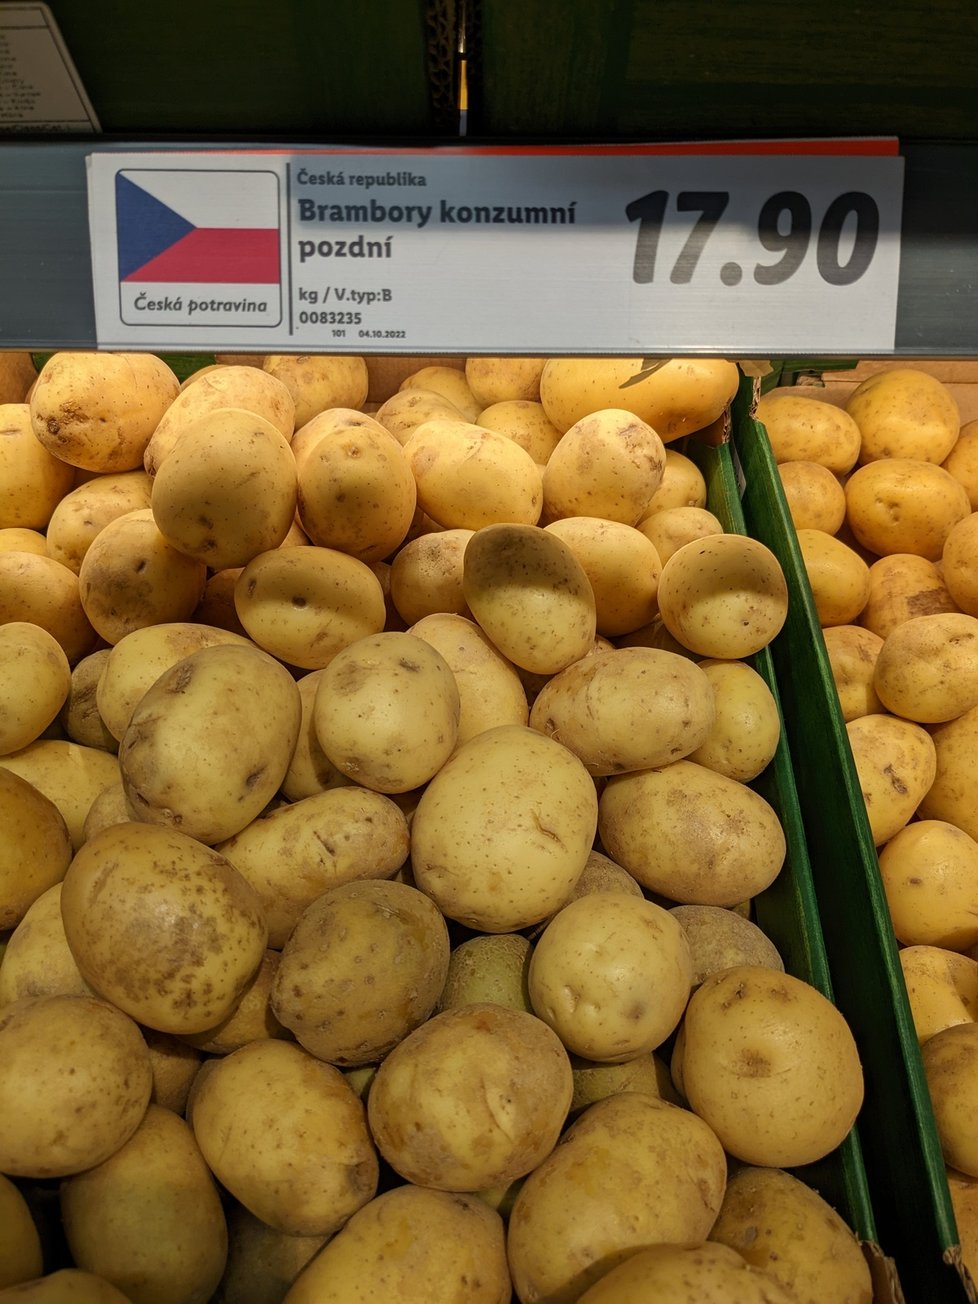 Sklizeň vrcholí a měly by být nejlevnější. Za brambory přitom v obchodě zaplatíme kolem 18 Kč za kilo.